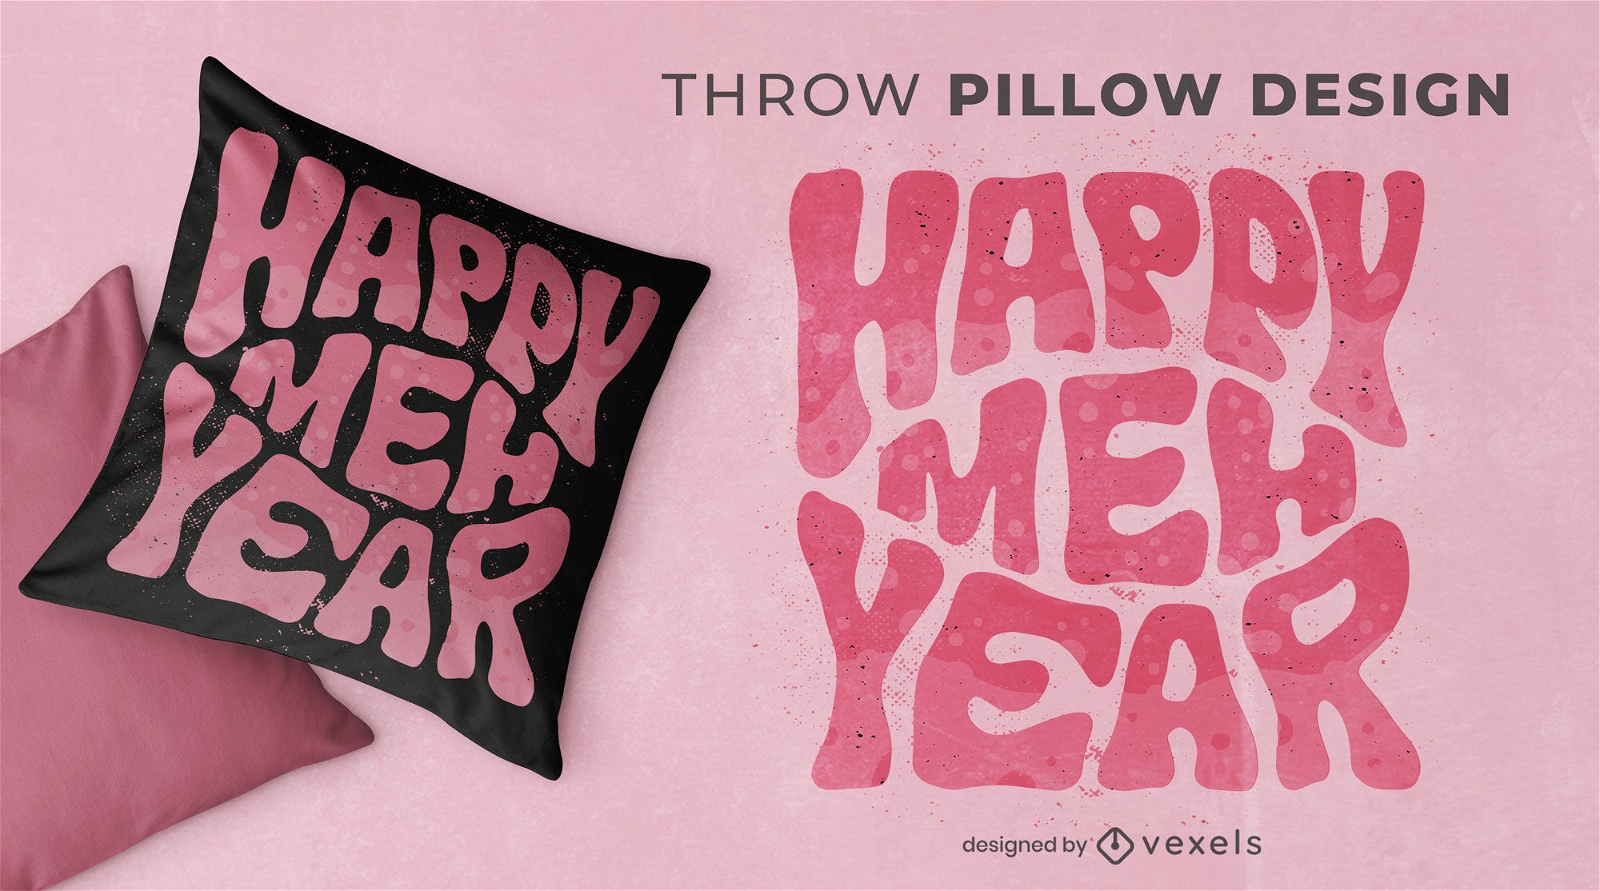 Diseño de almohada de tiro feliz año meh